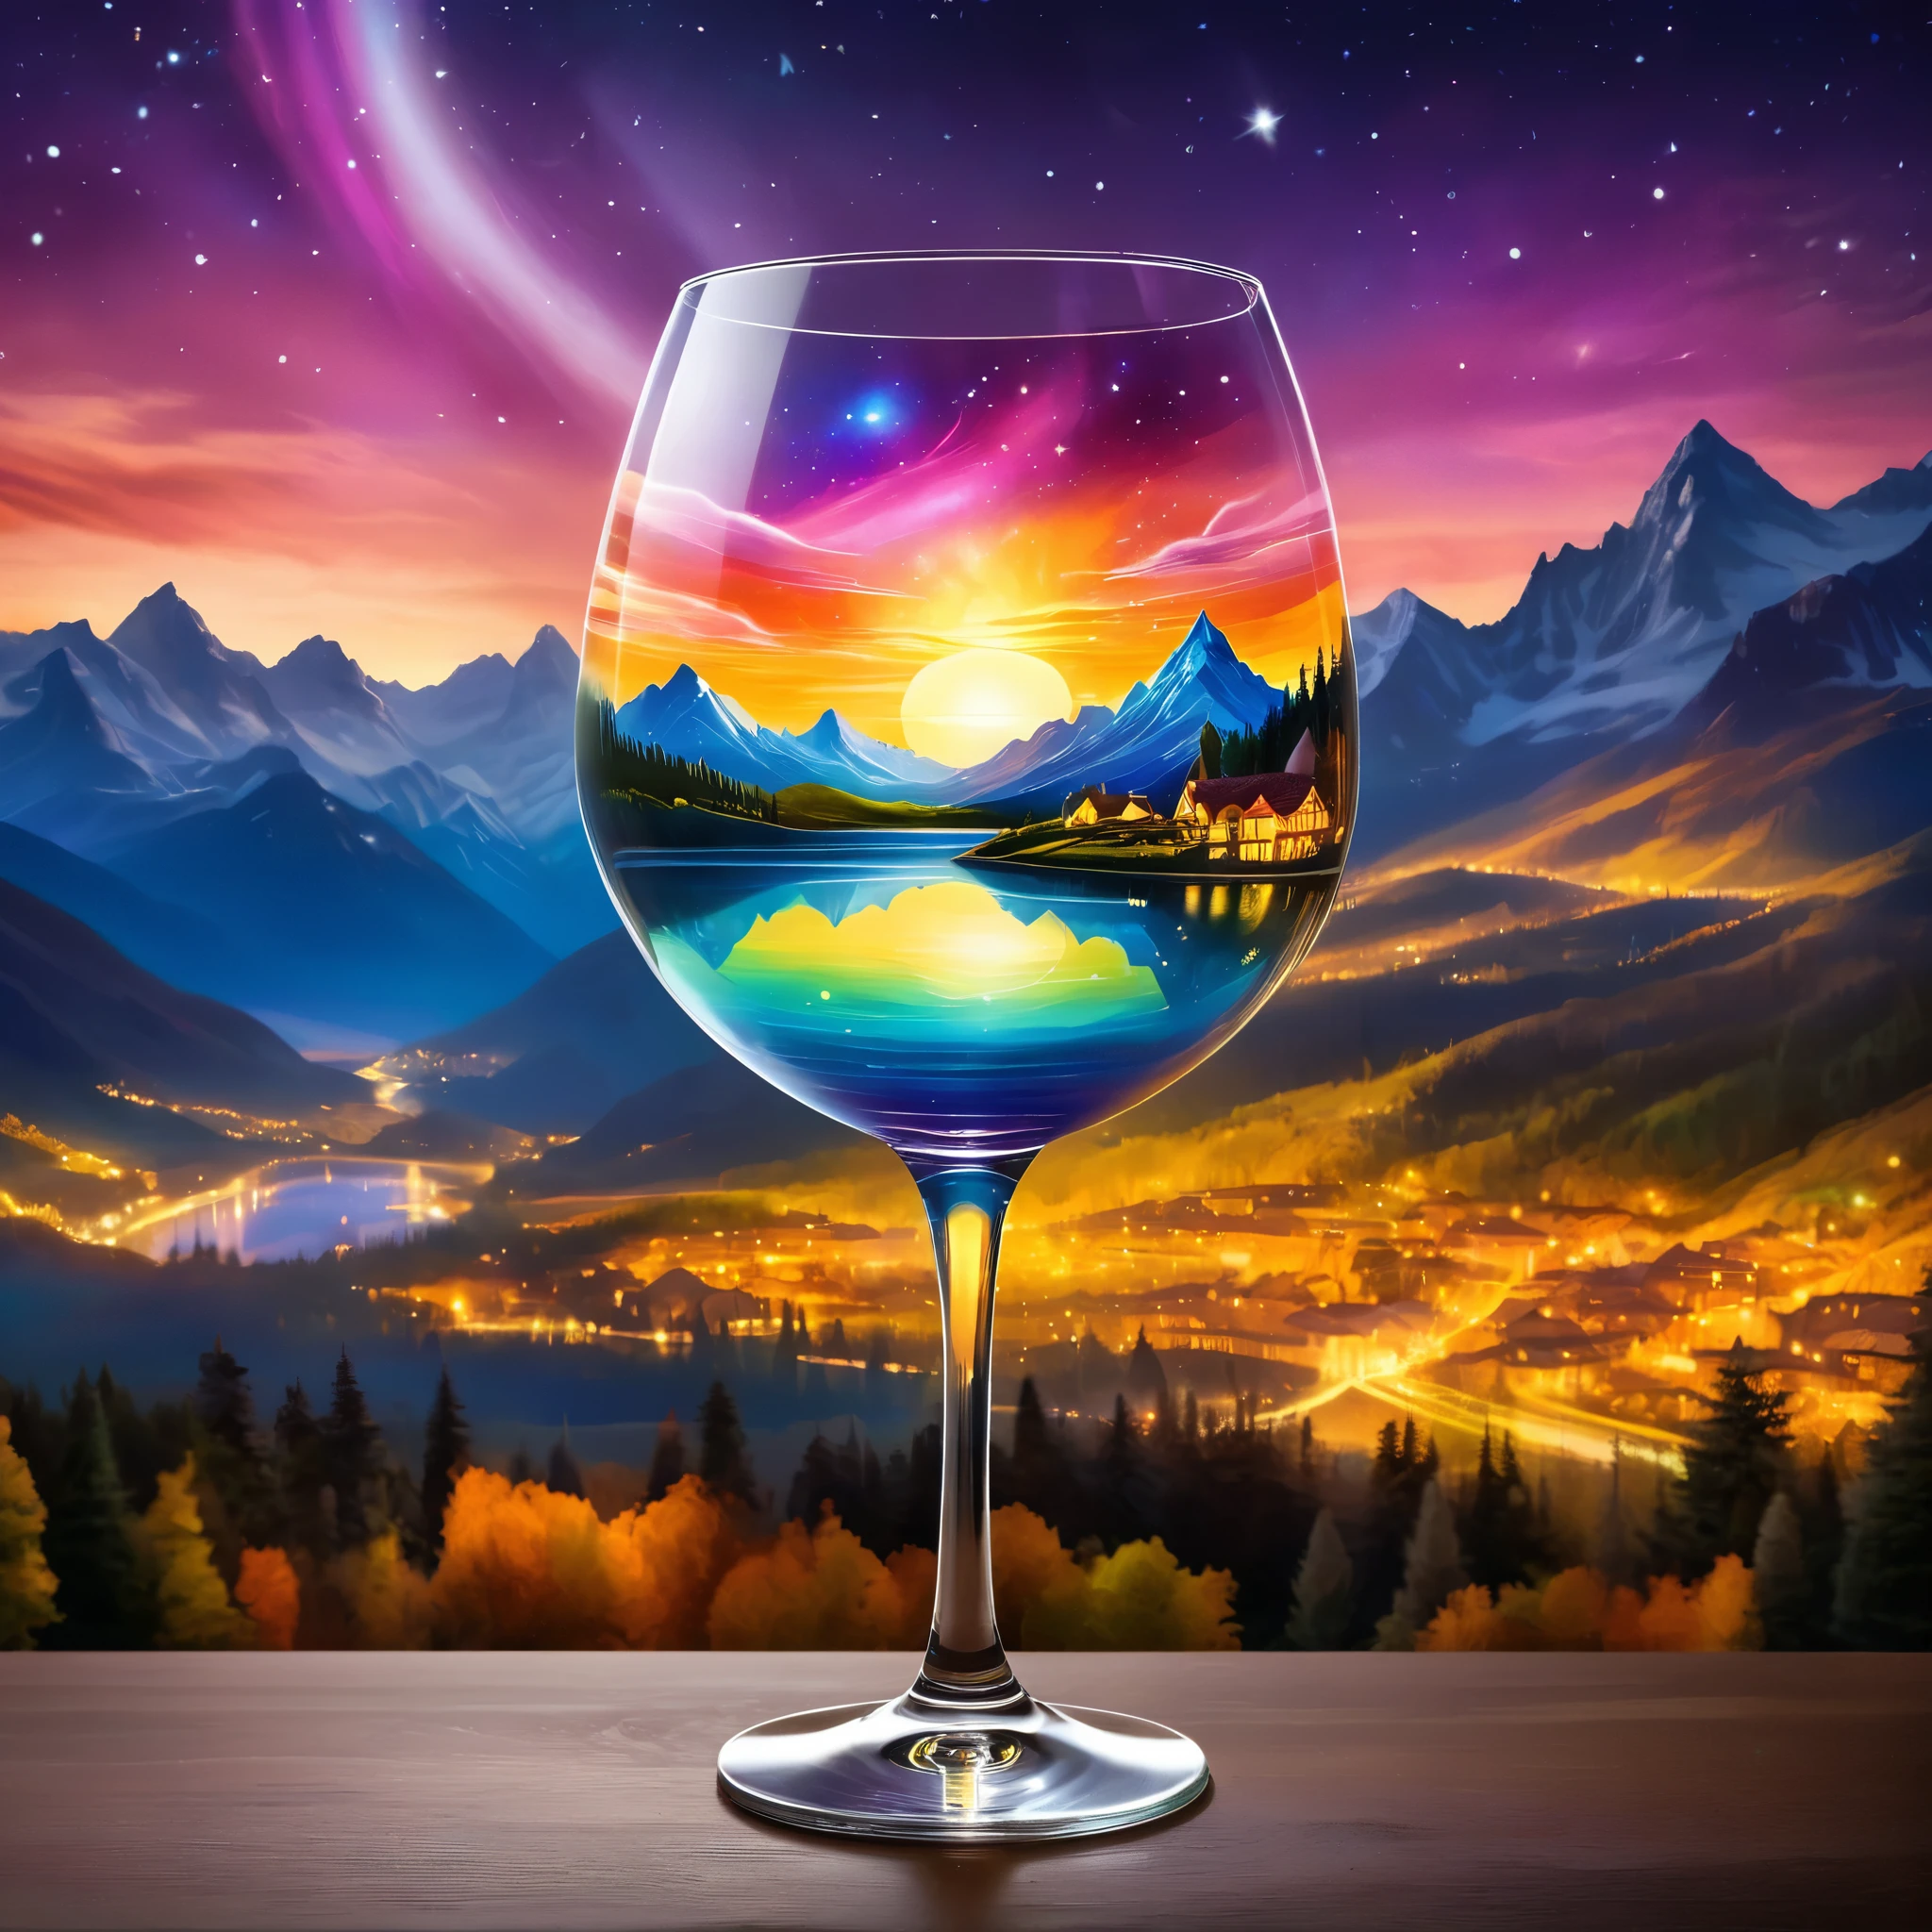 Erstellen Sie eine himmlische Szene in einem Weinglas, mit einer surrealen Landschaft mit Bergen und einem Polarlichthimmel. Der Hintergrund umfasst einen leuchtenden Sonnenuntergang und eine Stadtlandschaft. Der Stil sollte Fantasy mit ätherischen Elementen sein. hyperrealistisches Foto, super lebendige Farben, 16k